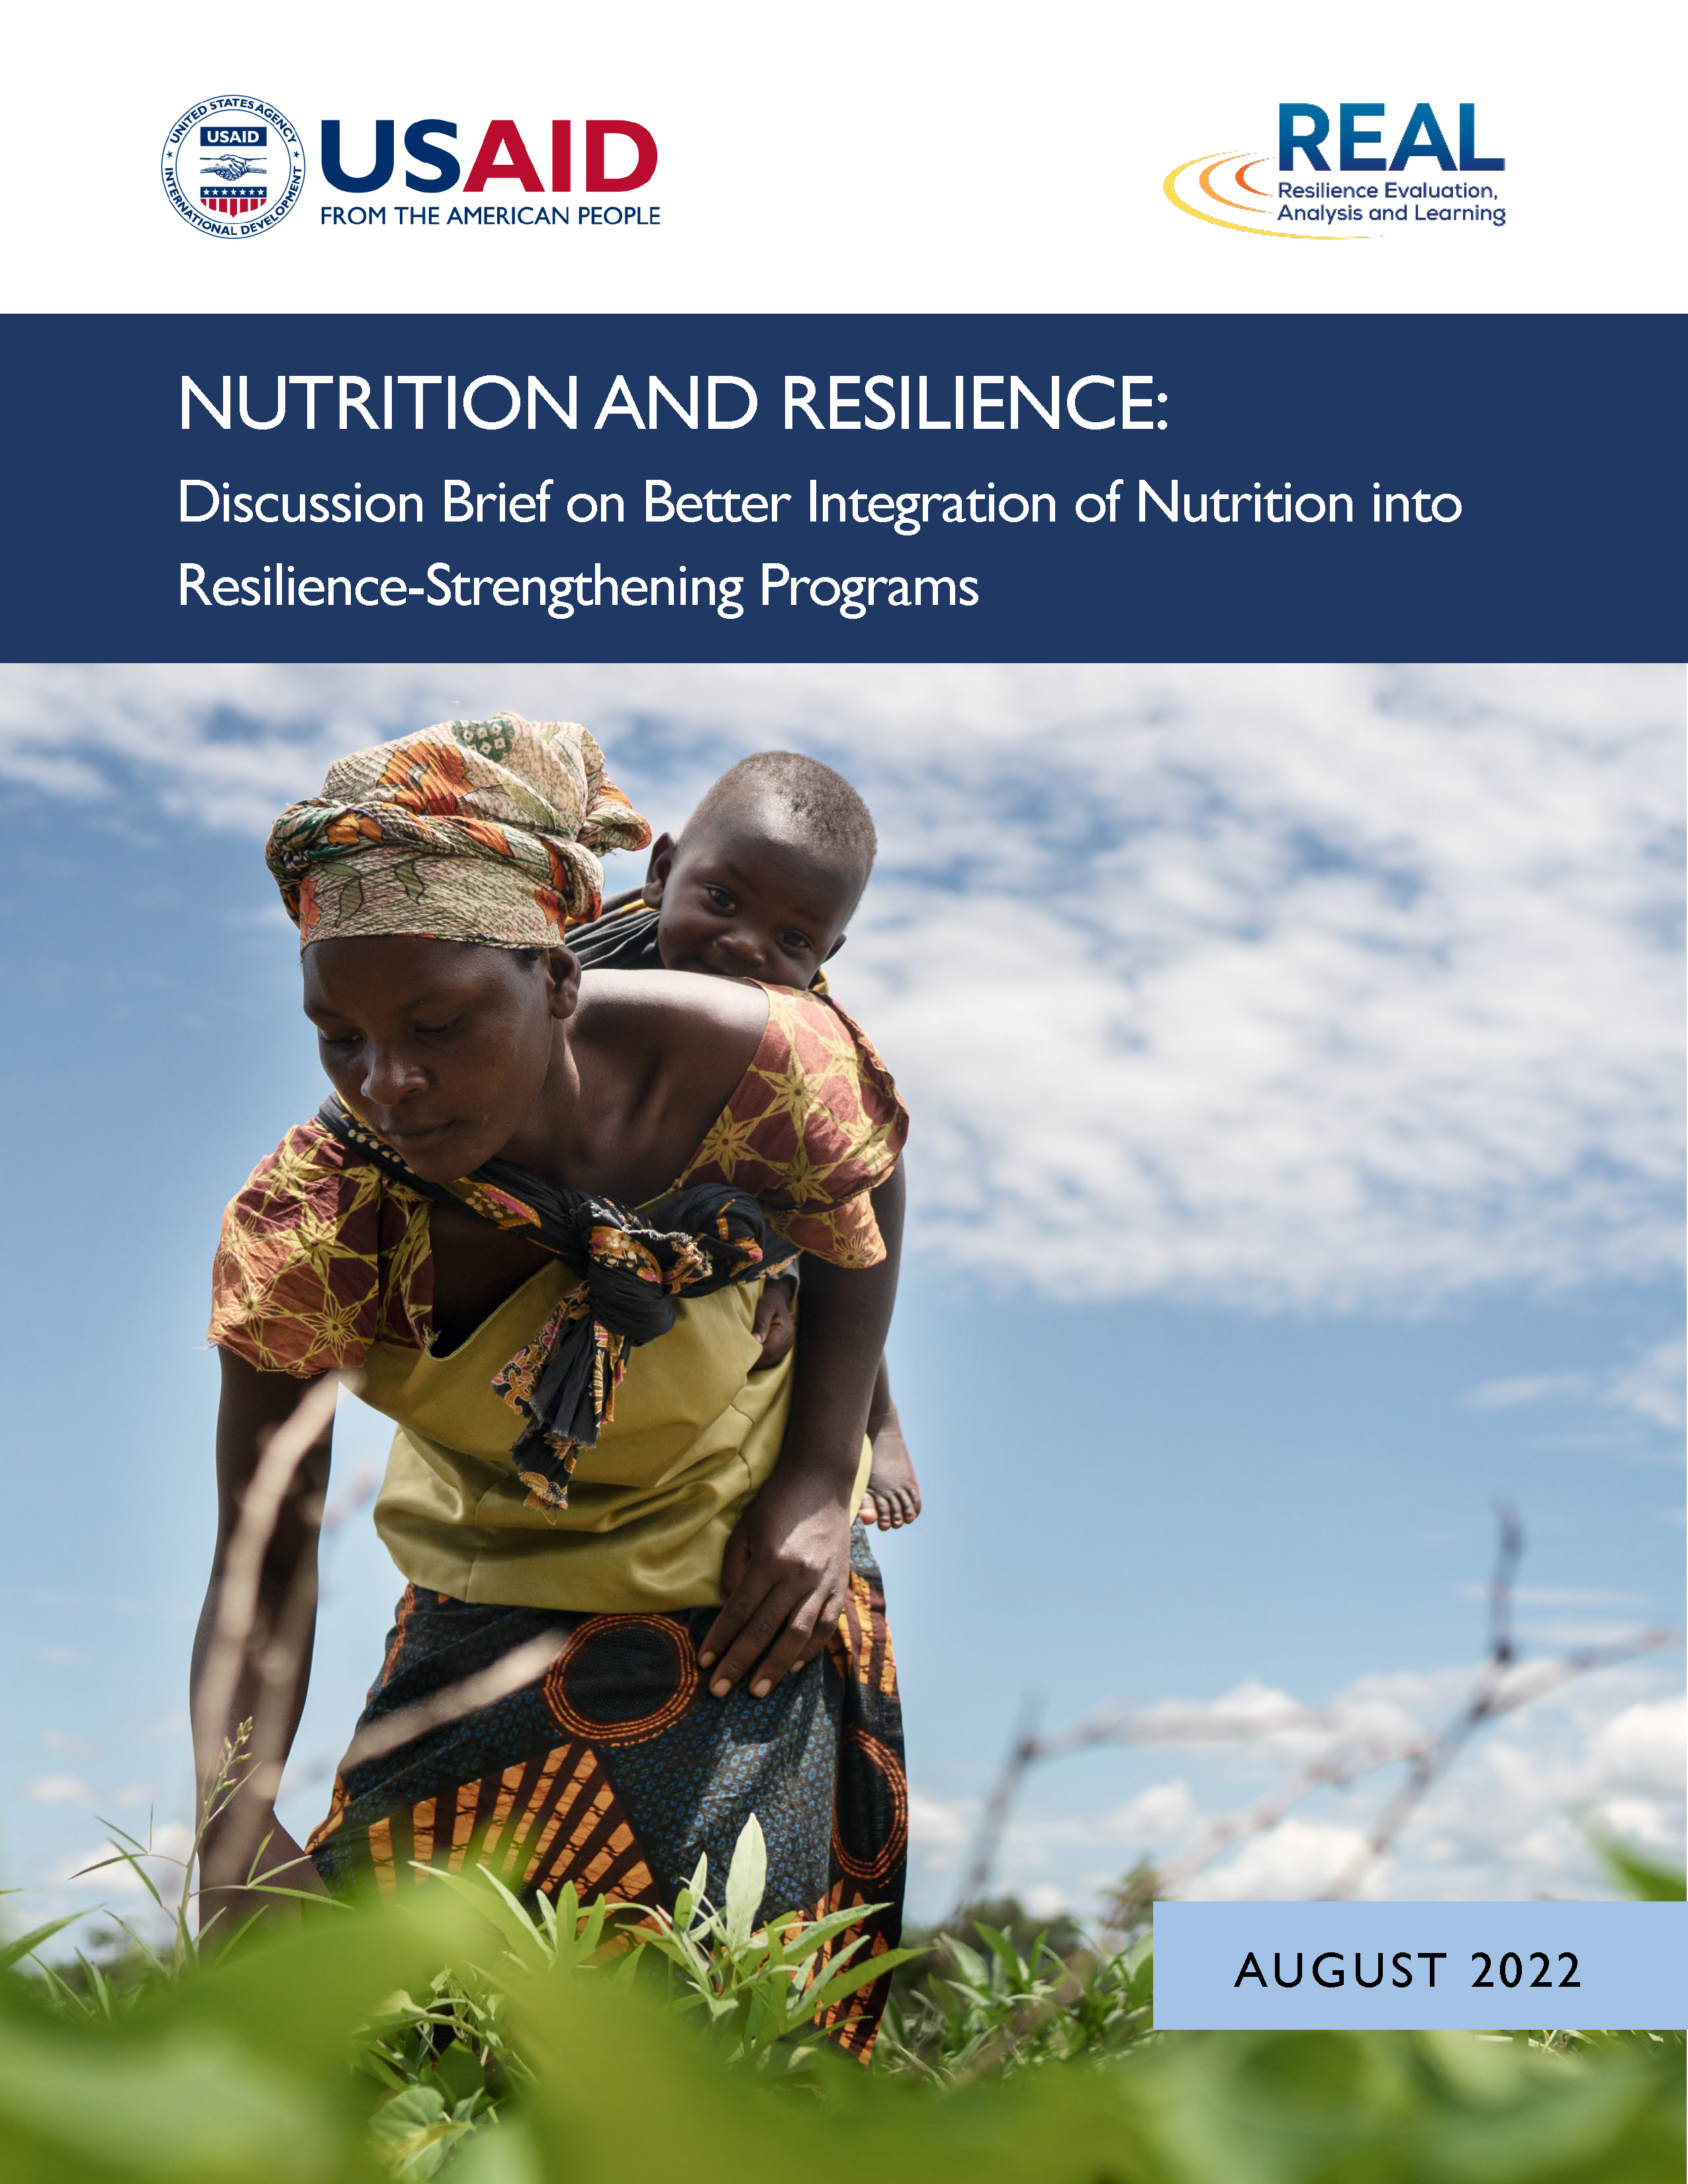 Page de couverture du rapport - Nutrition et résilience : Note de discussion sur une meilleure intégration de la nutrition dans les programmes de renforcement de la résilience